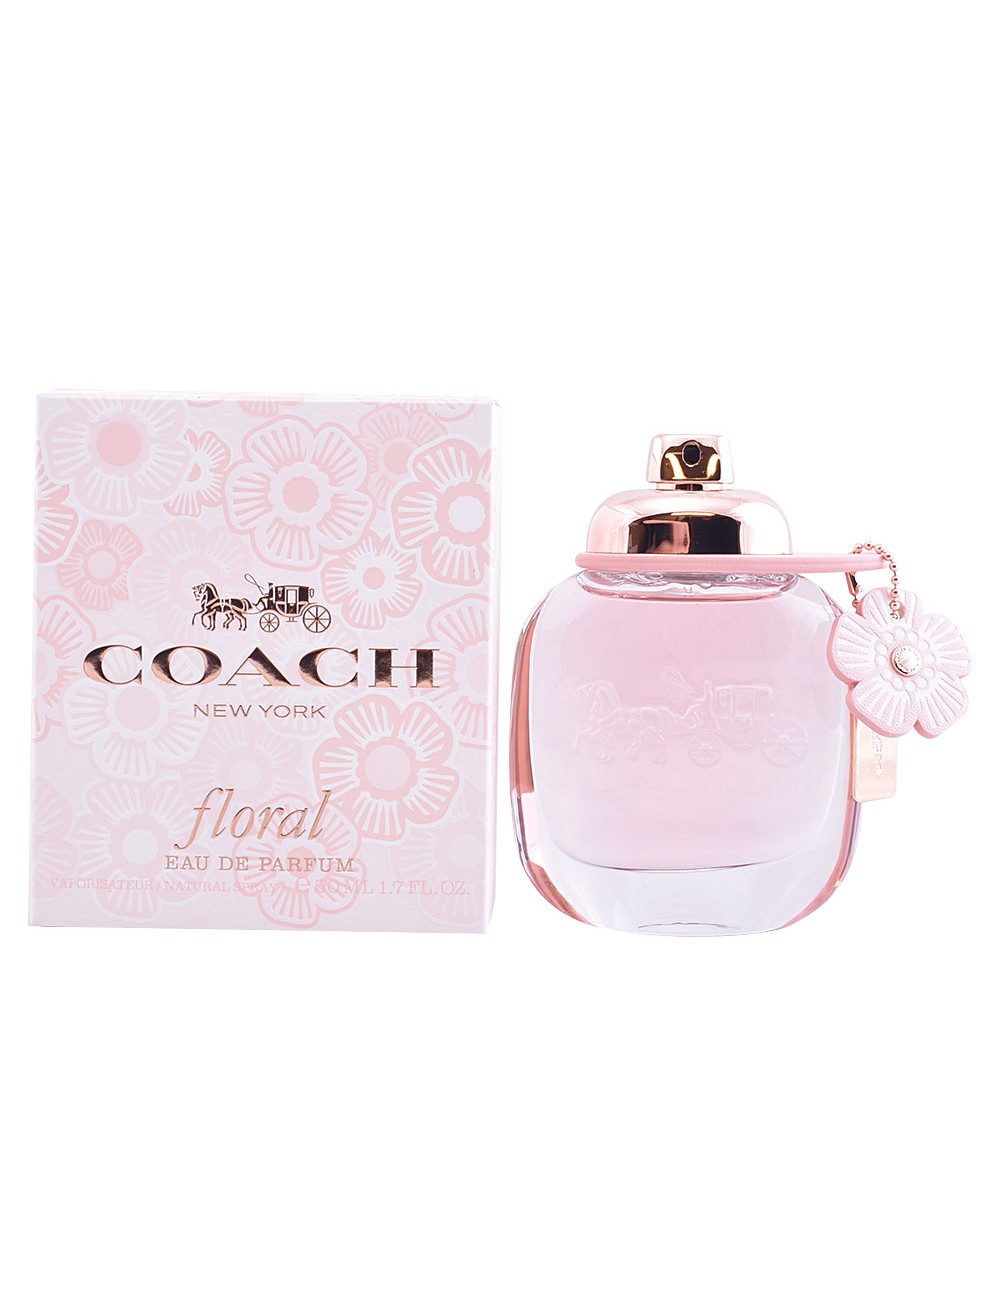 COACH FLORAL eau de parfum vaporisateur 50ml NE100616